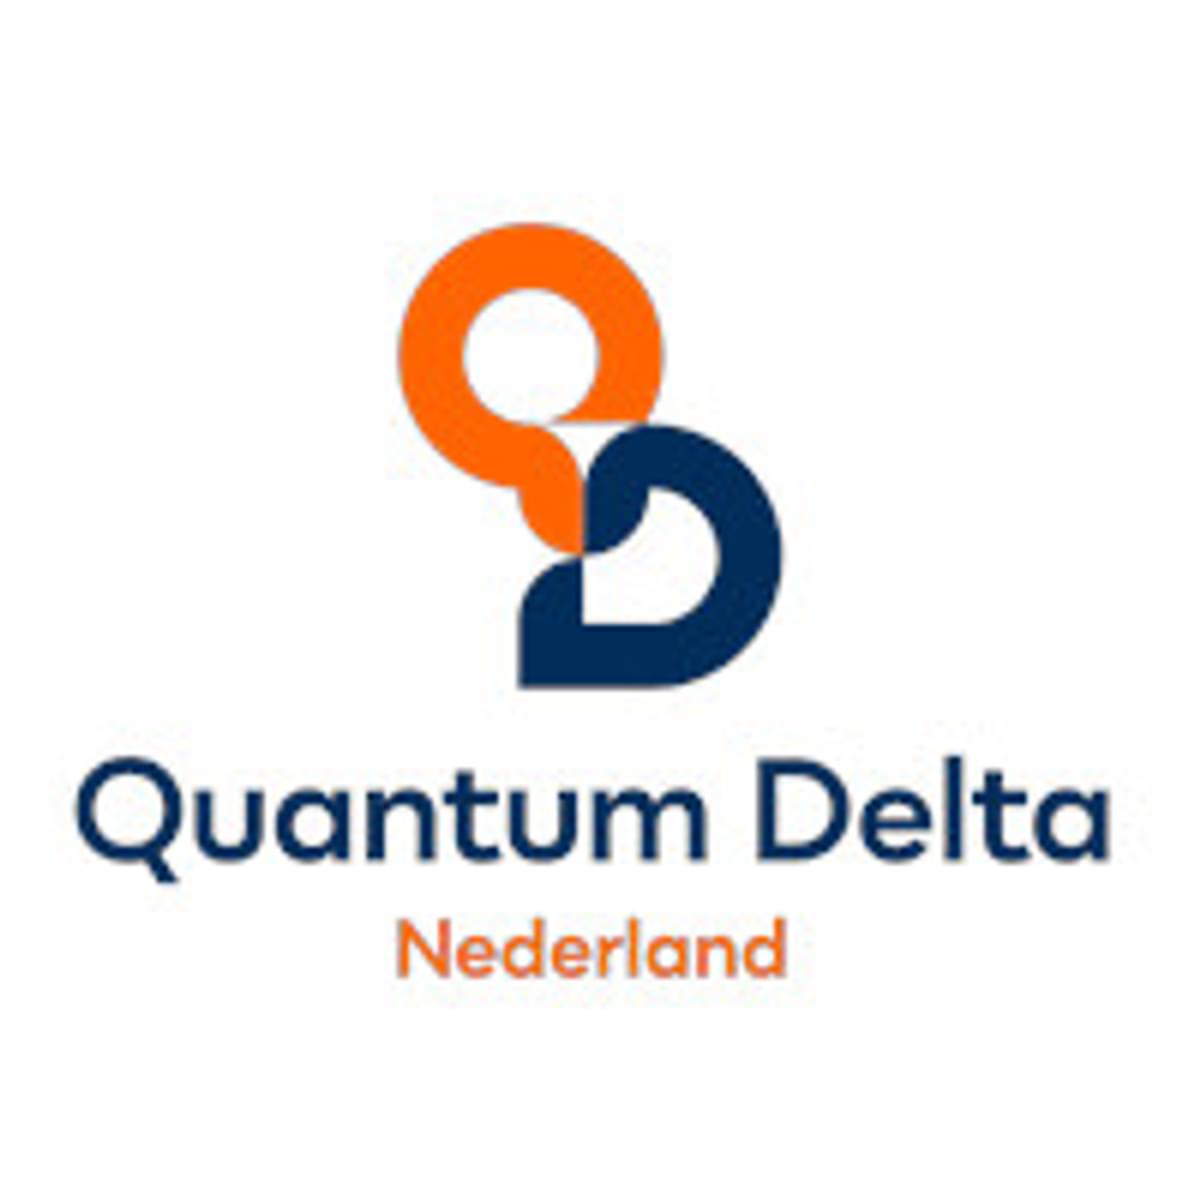 Quantum Delta NL en NWO lanceren call voor quantum onderzoek image